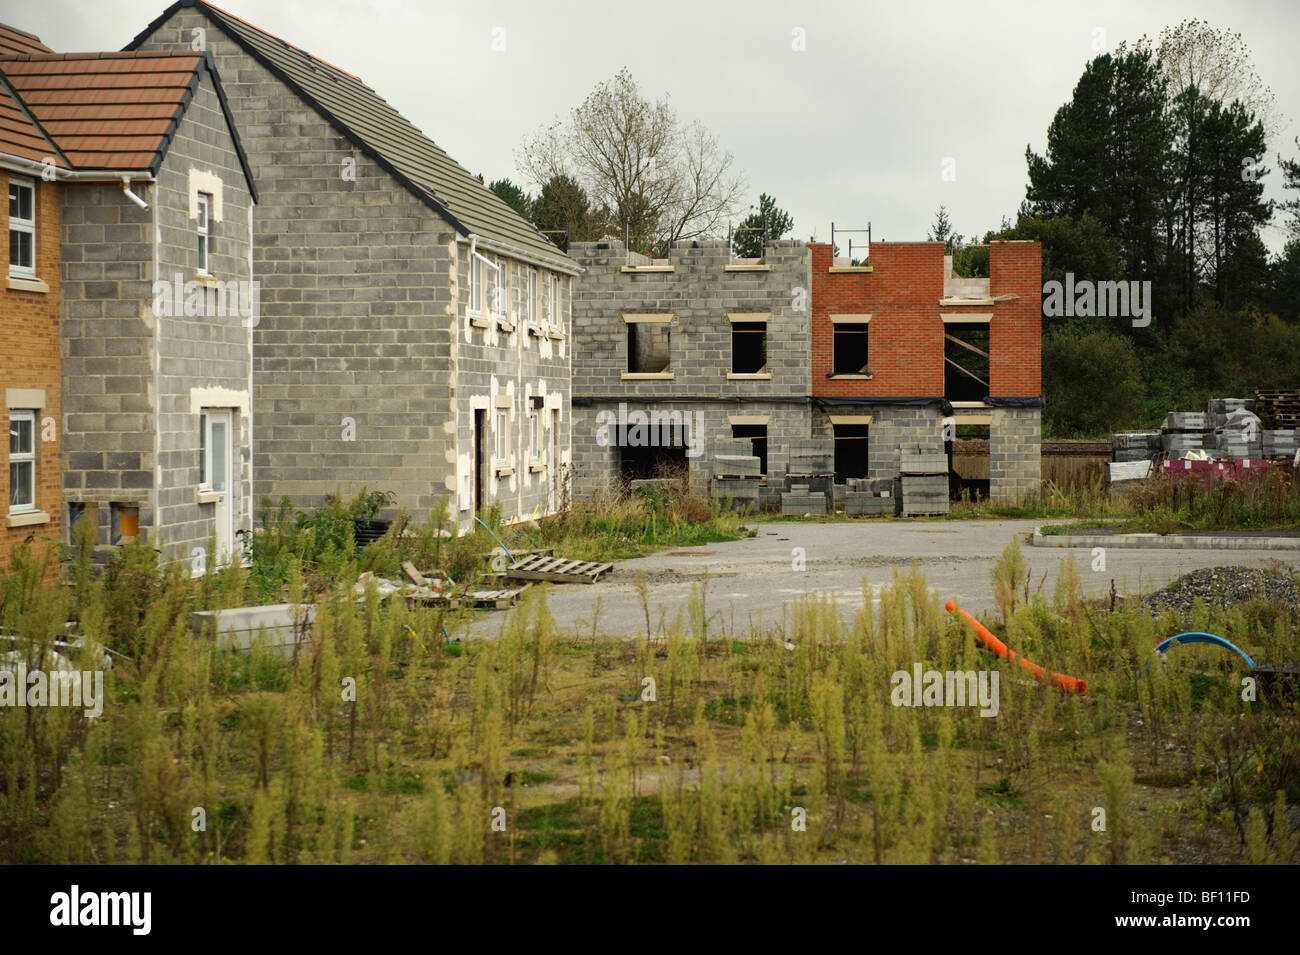 Teil realisiertes Projekt der privaten Wohnsiedlung am Stadtrand von Llanelli, aufgegeben, nachdem die Entwickler ging Pleite. Wales, UK Stockfoto